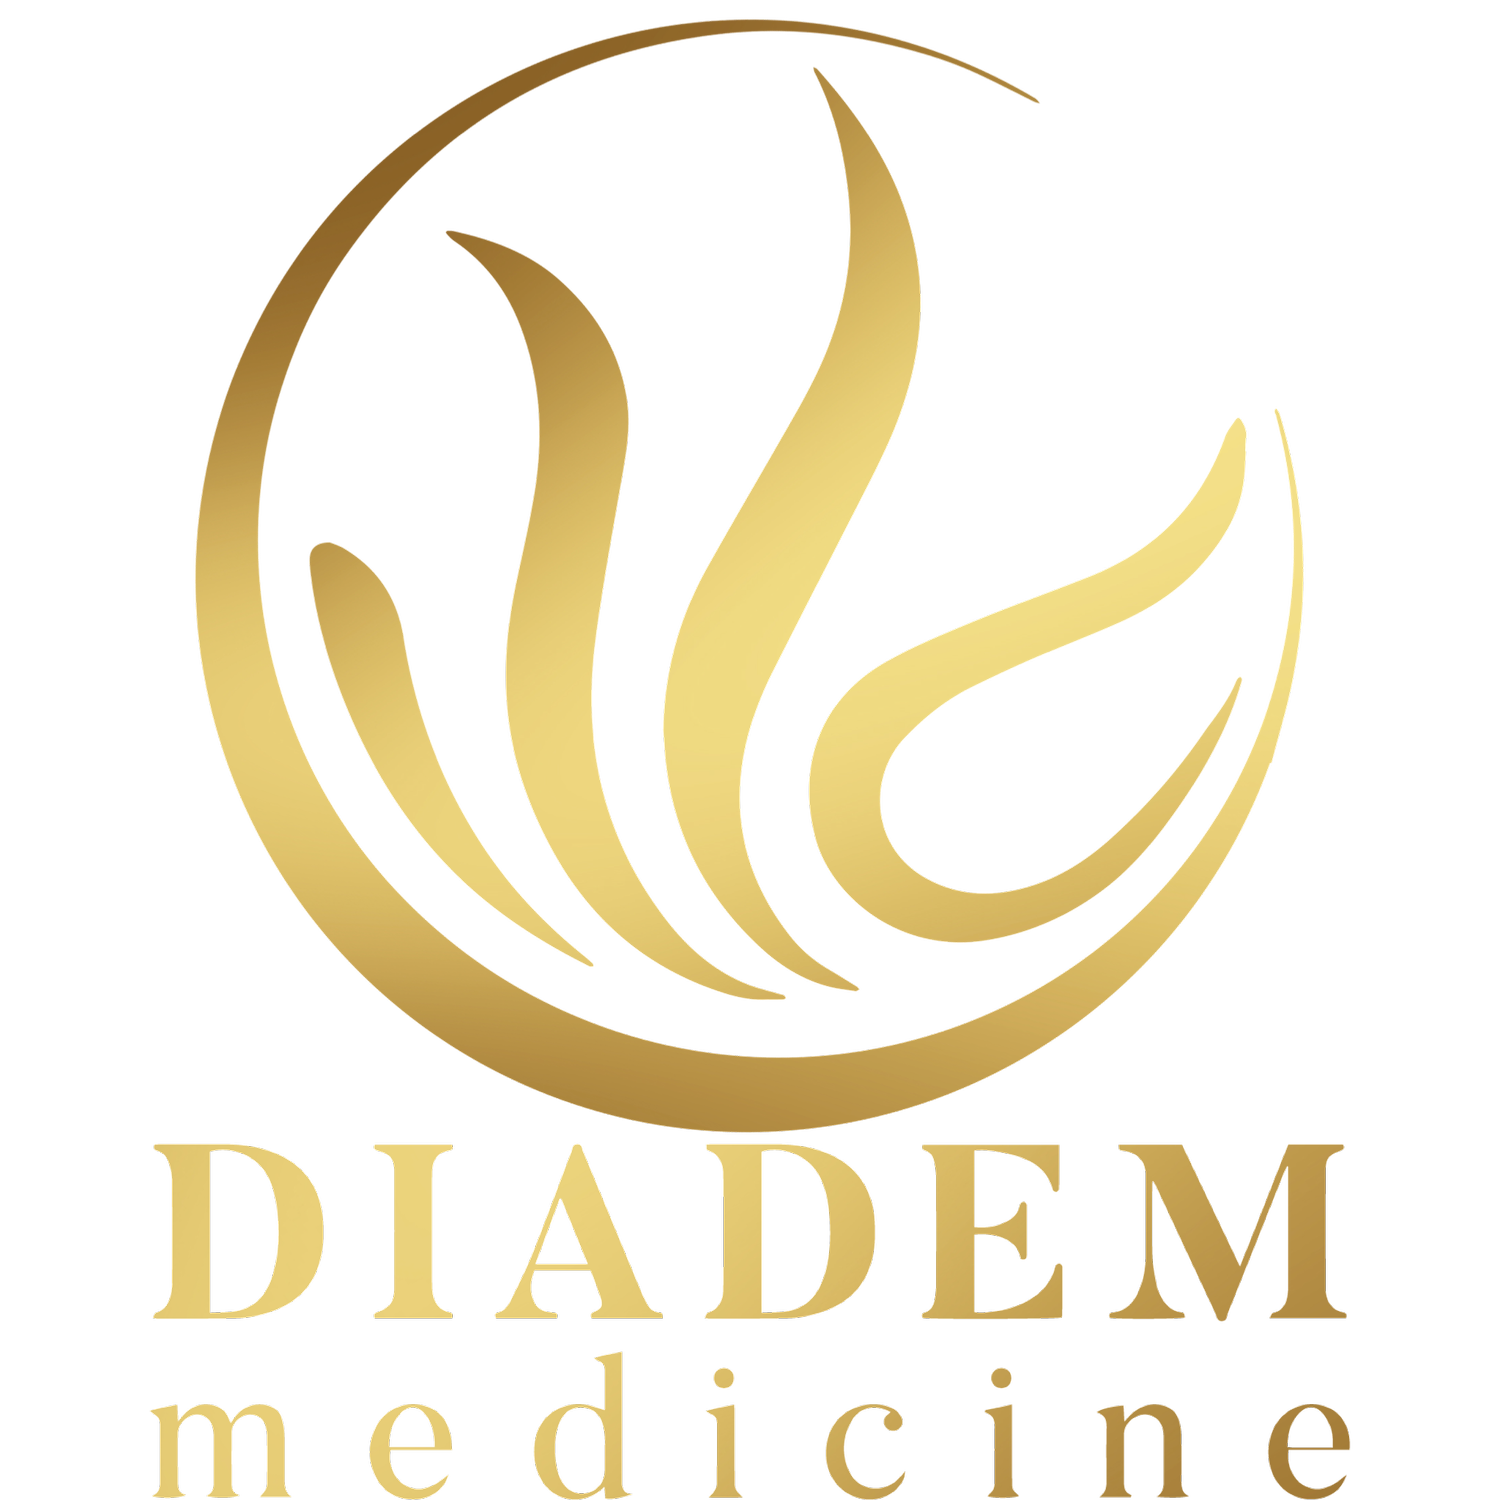 Diana Pine: Diadem Medicine